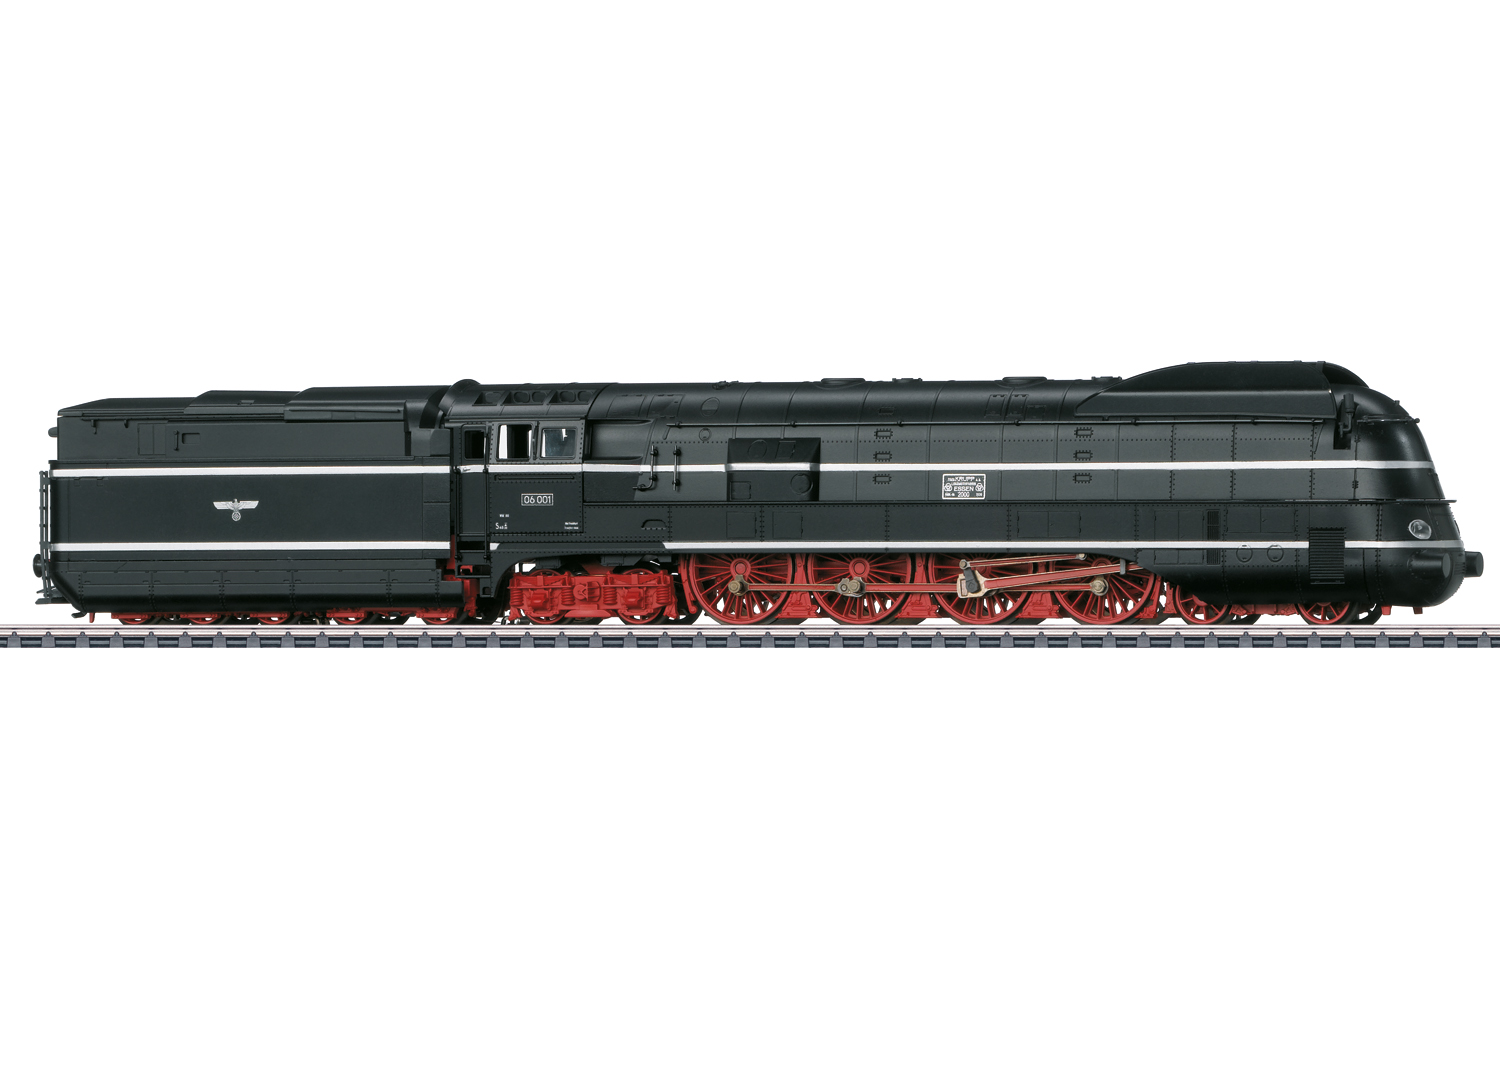 Märklin 39662 Dampflokomotive 06 001 Dampflokomotive 06 001